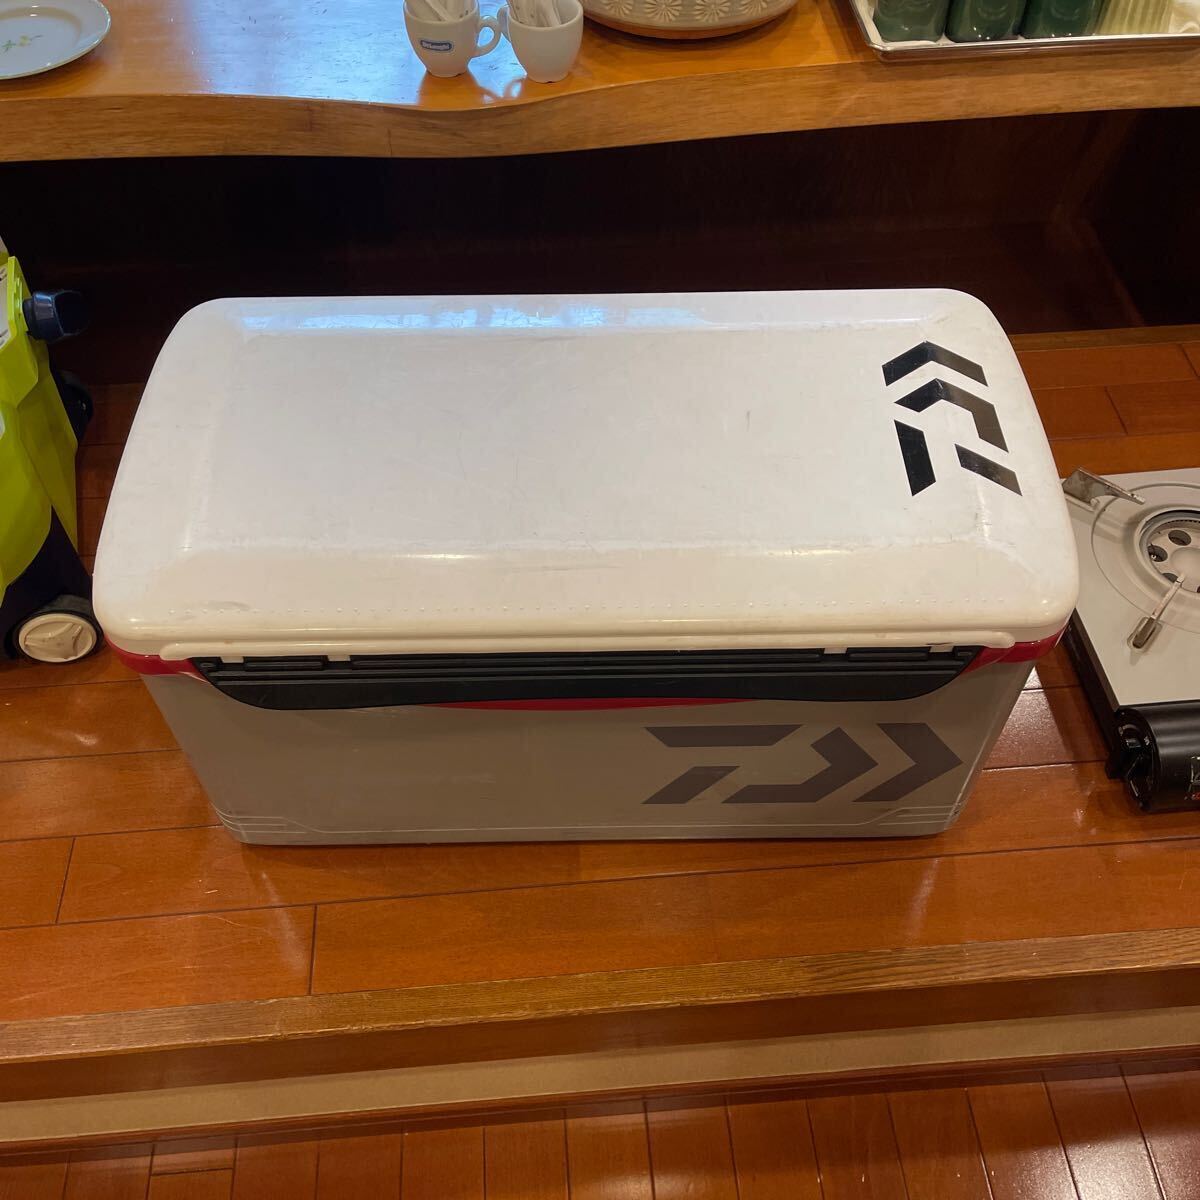  Daiwa DAIWA cooler-box s3000 б/у.